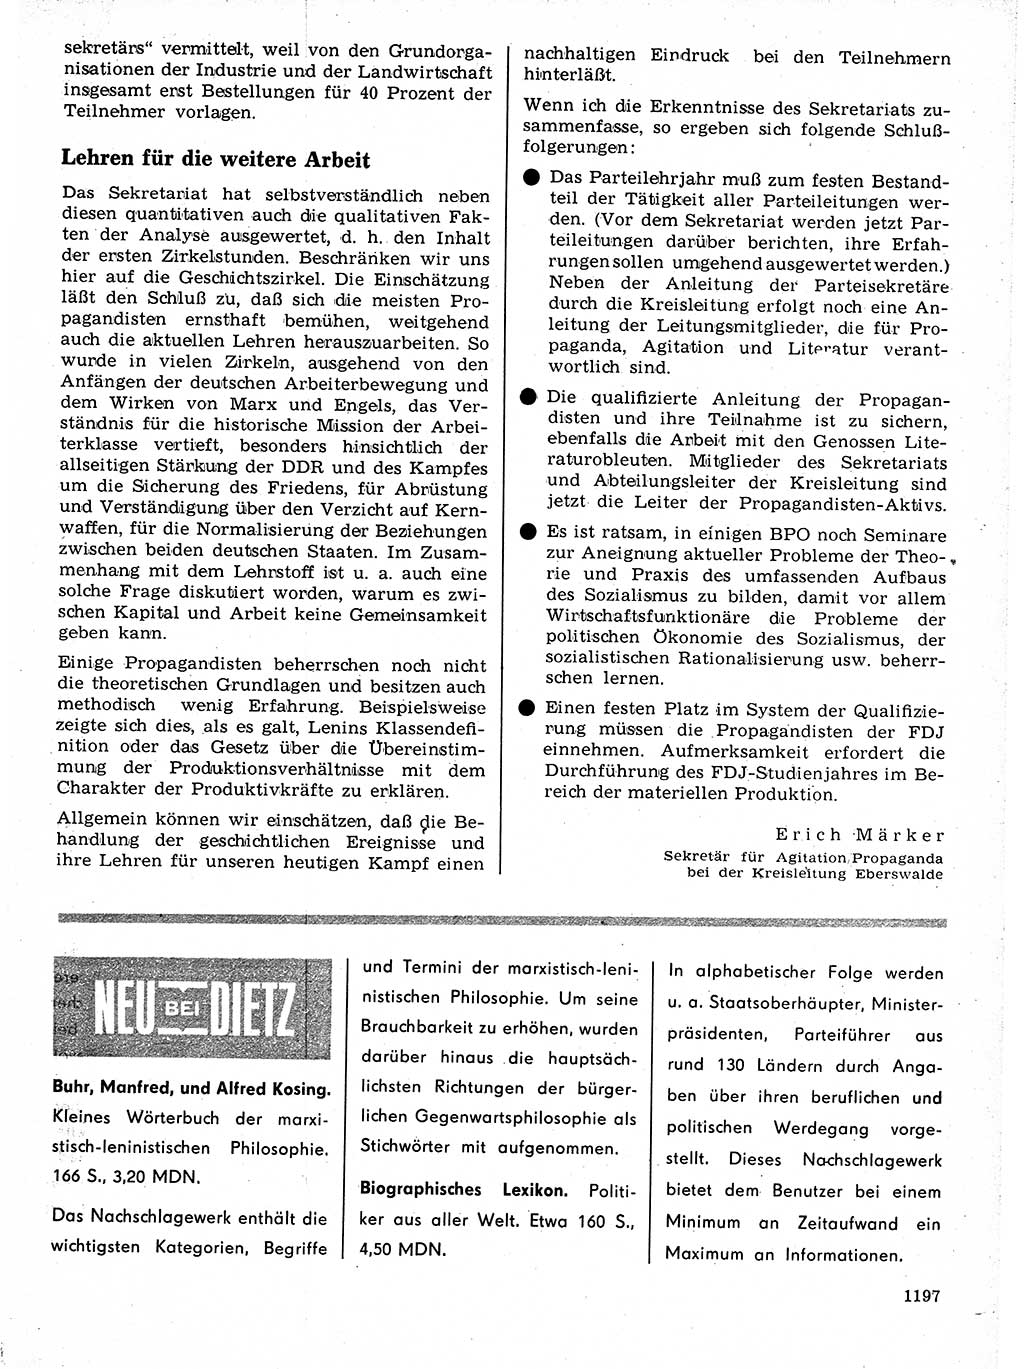 Neuer Weg (NW), Organ des Zentralkomitees (ZK) der SED (Sozialistische Einheitspartei Deutschlands) für Fragen des Parteilebens, 21. Jahrgang [Deutsche Demokratische Republik (DDR)] 1966, Seite 1197 (NW ZK SED DDR 1966, S. 1197)